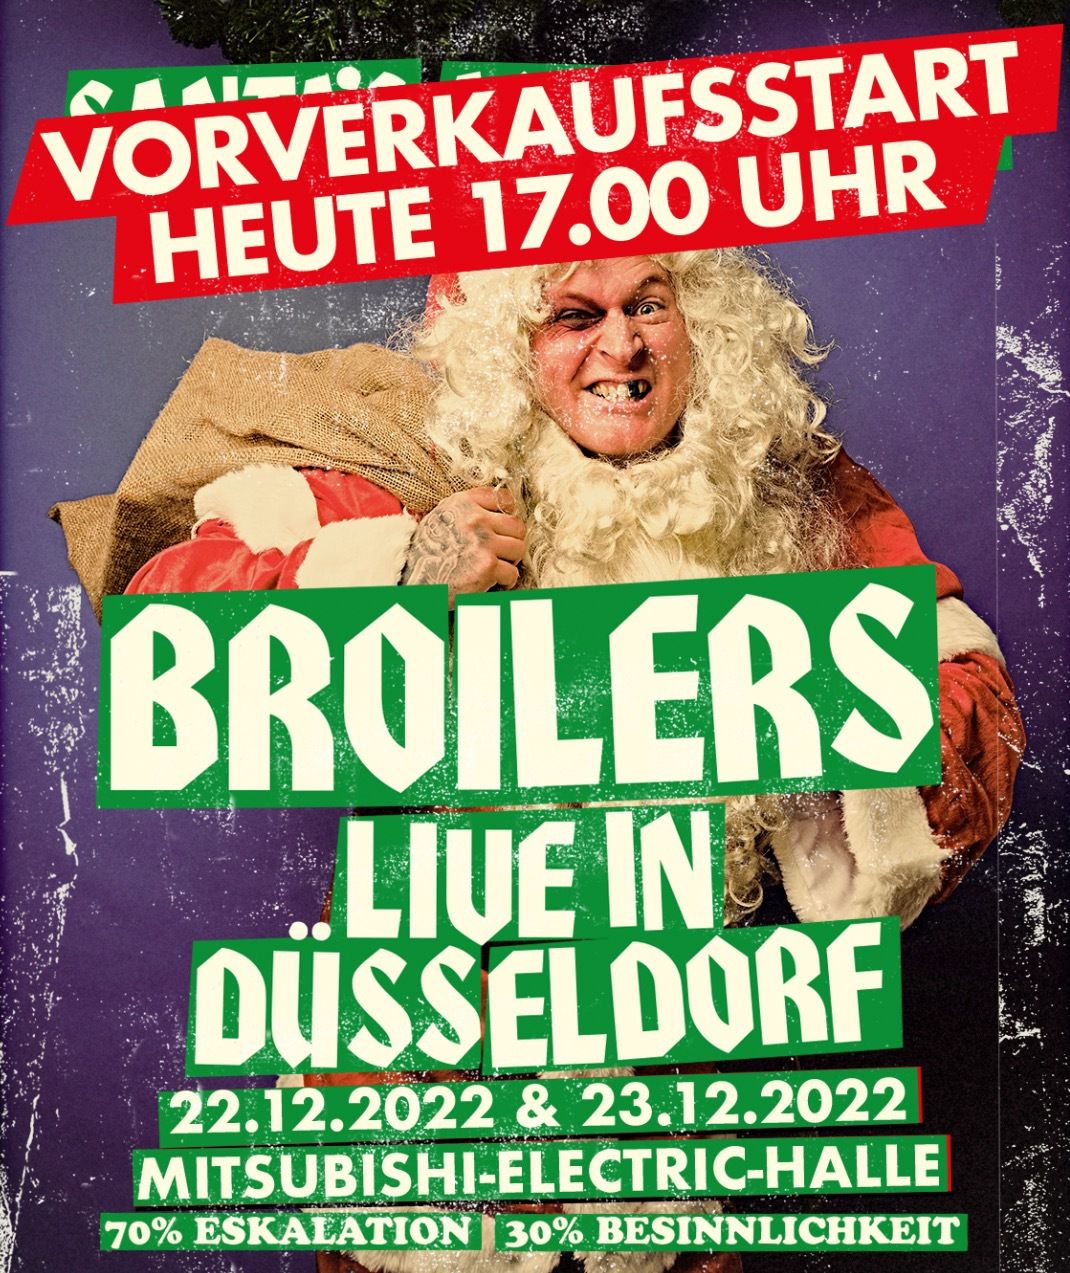 Weihnachts-Shows am 22. und 23. Dezember in Düsseldorf